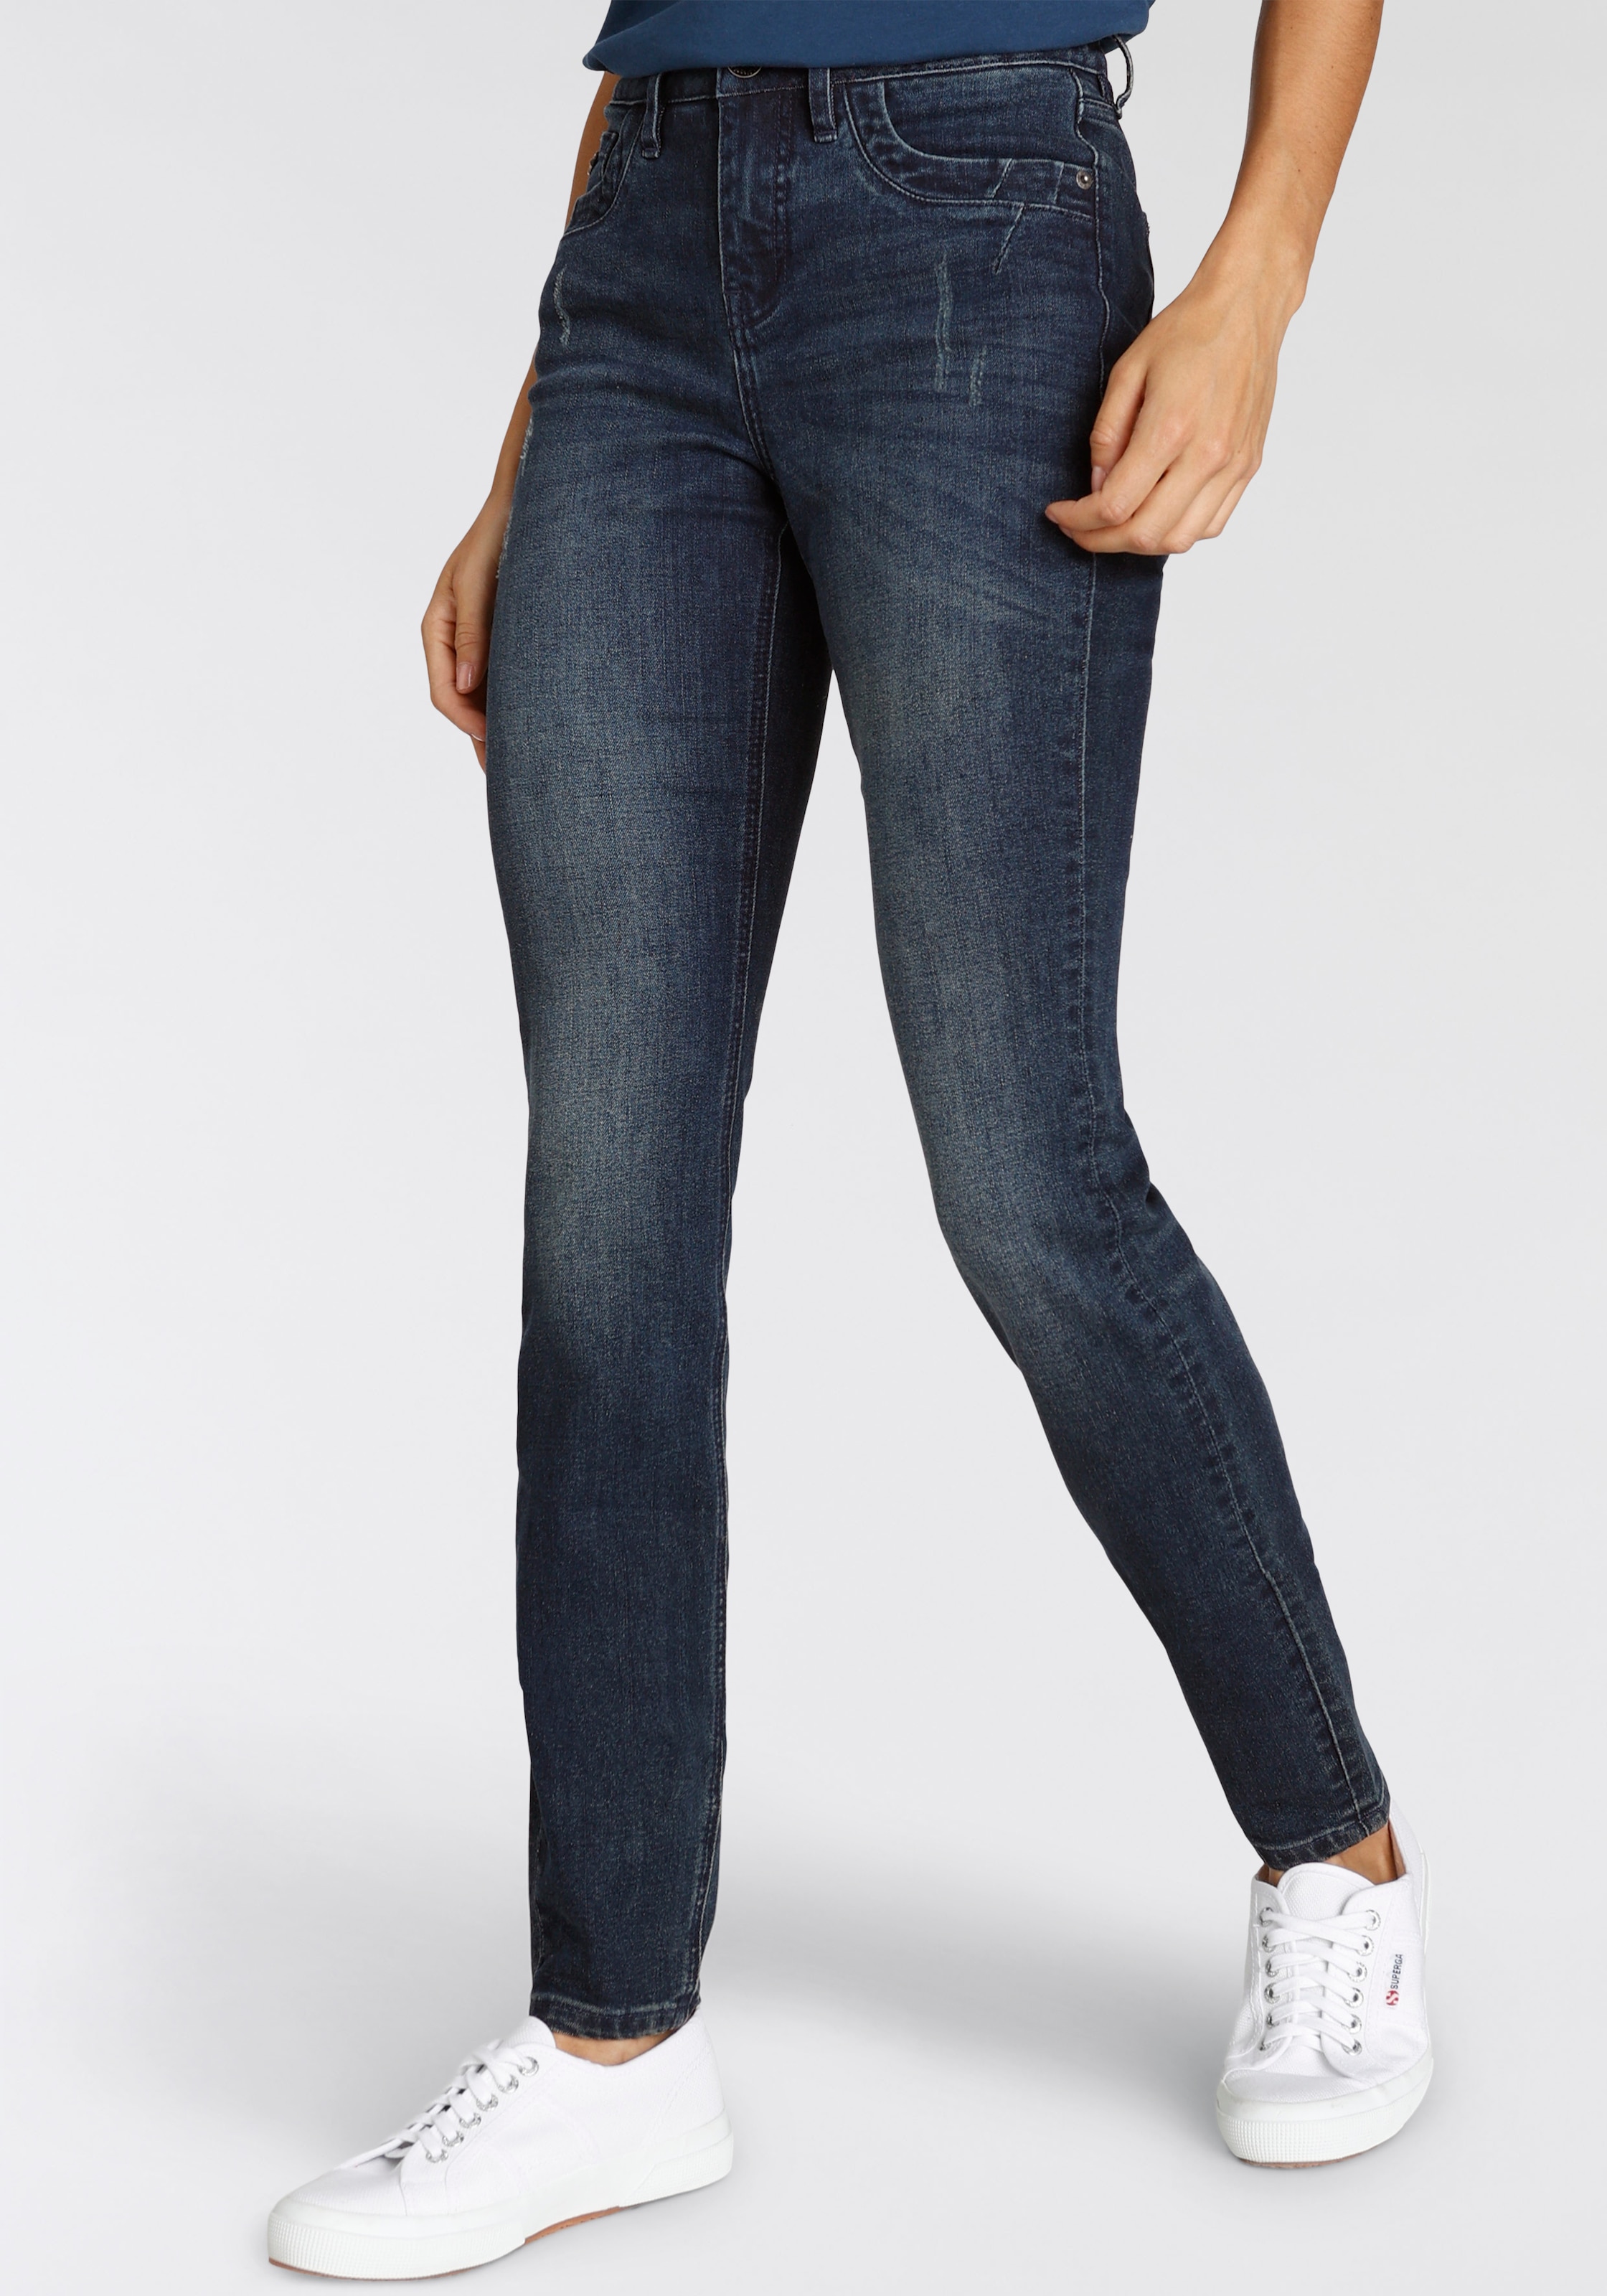 shoppen - Modetrends Damen online His aktuelle jetzt Jeans